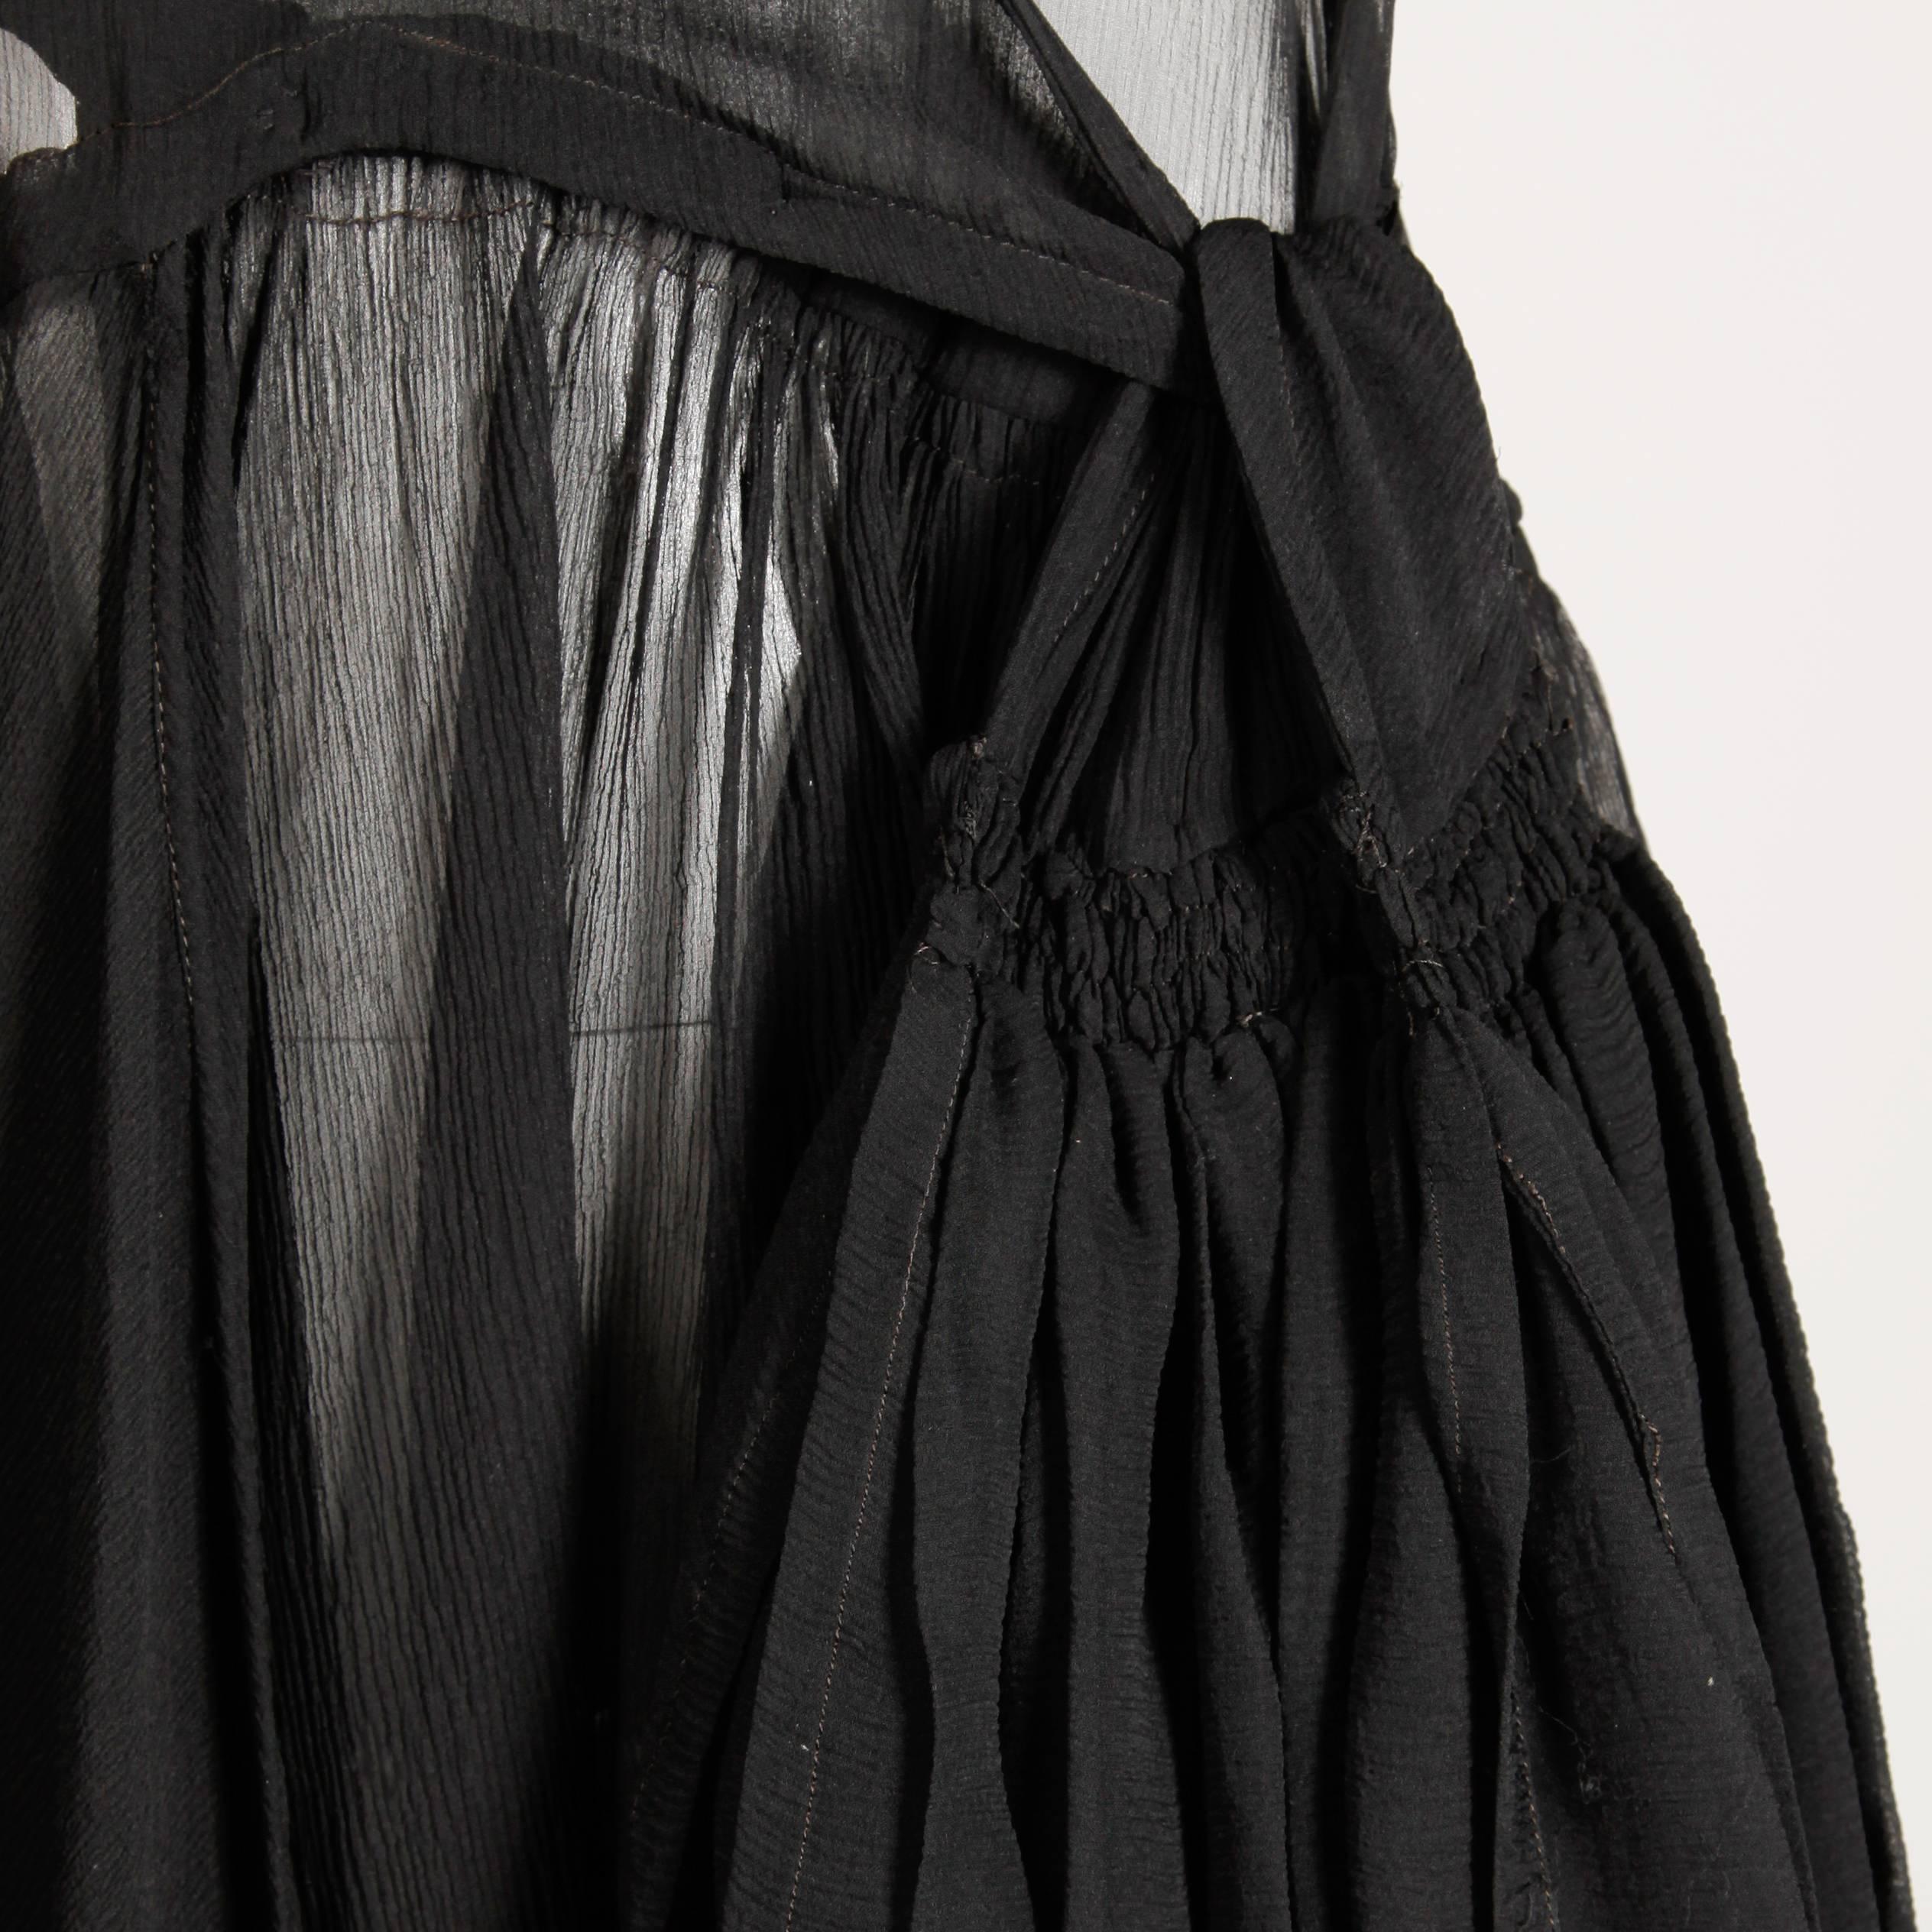 1930 flapper dresses